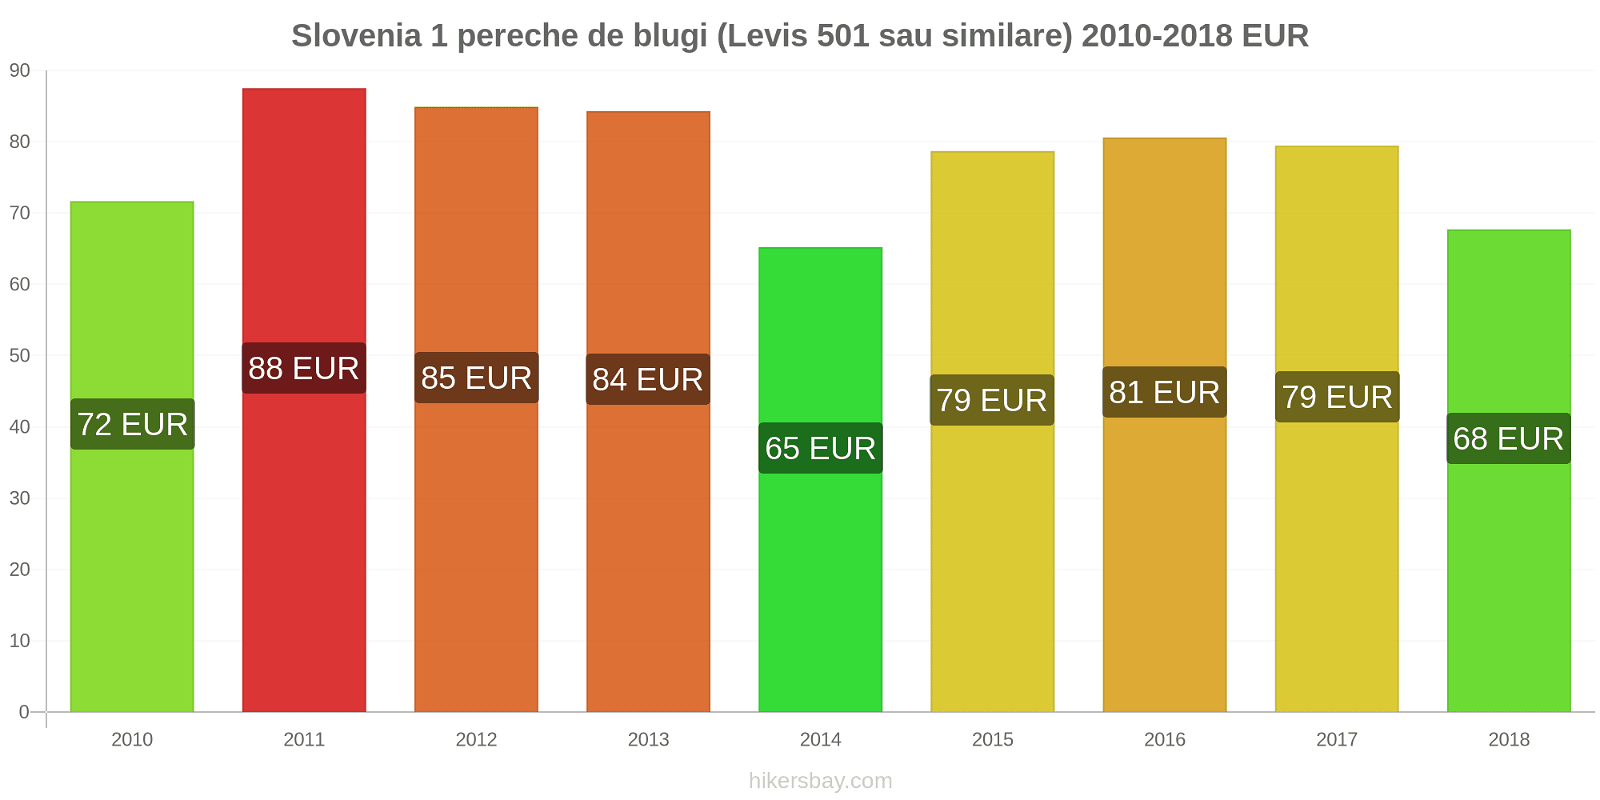 Slovenia schimbări de prețuri 1 pereche de blugi (Levis 501 sau similare) hikersbay.com